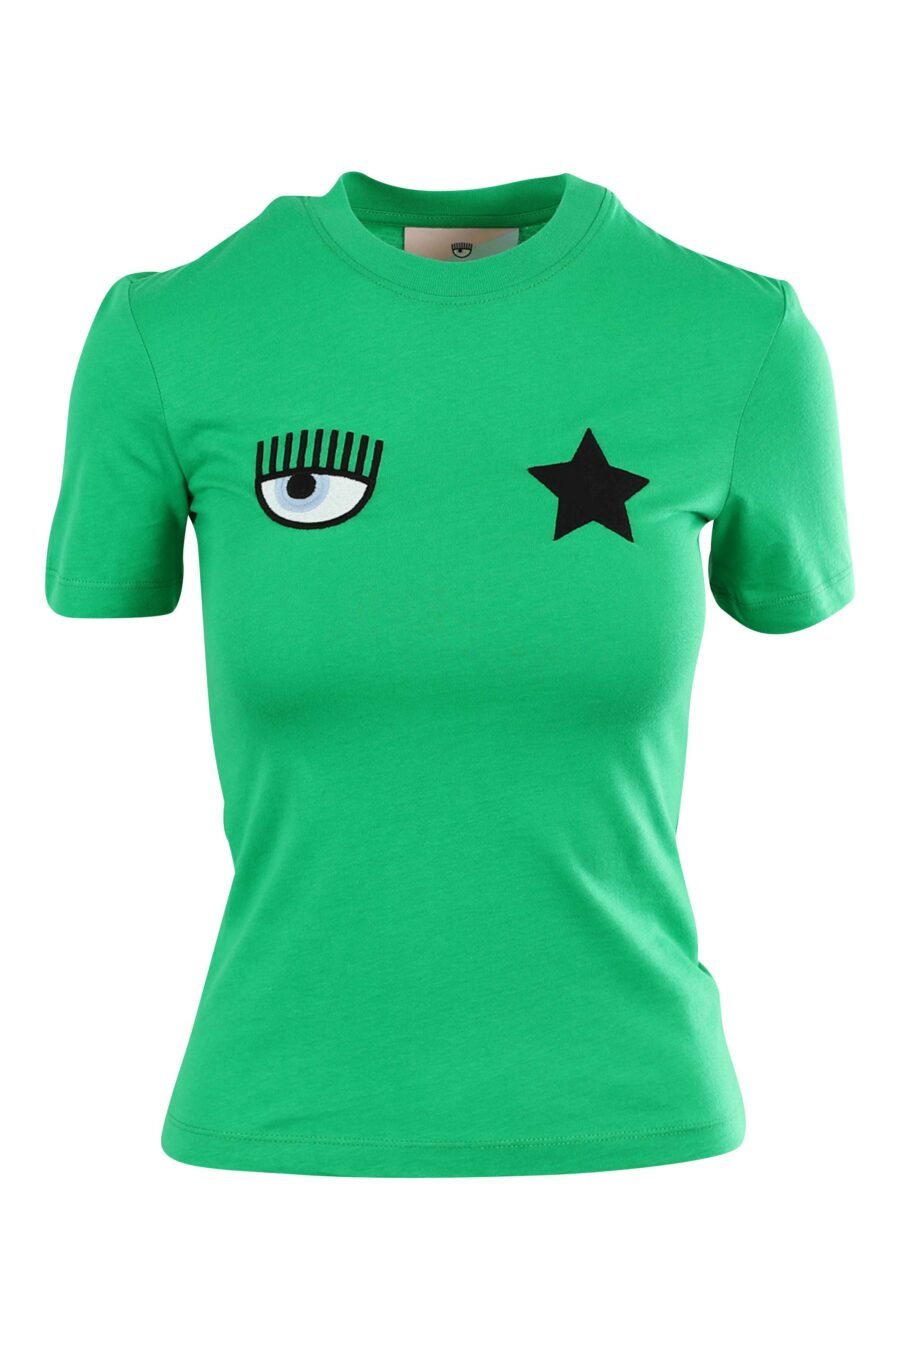 Camiseta verde claro con logo ojo y estrella - 8052672416780